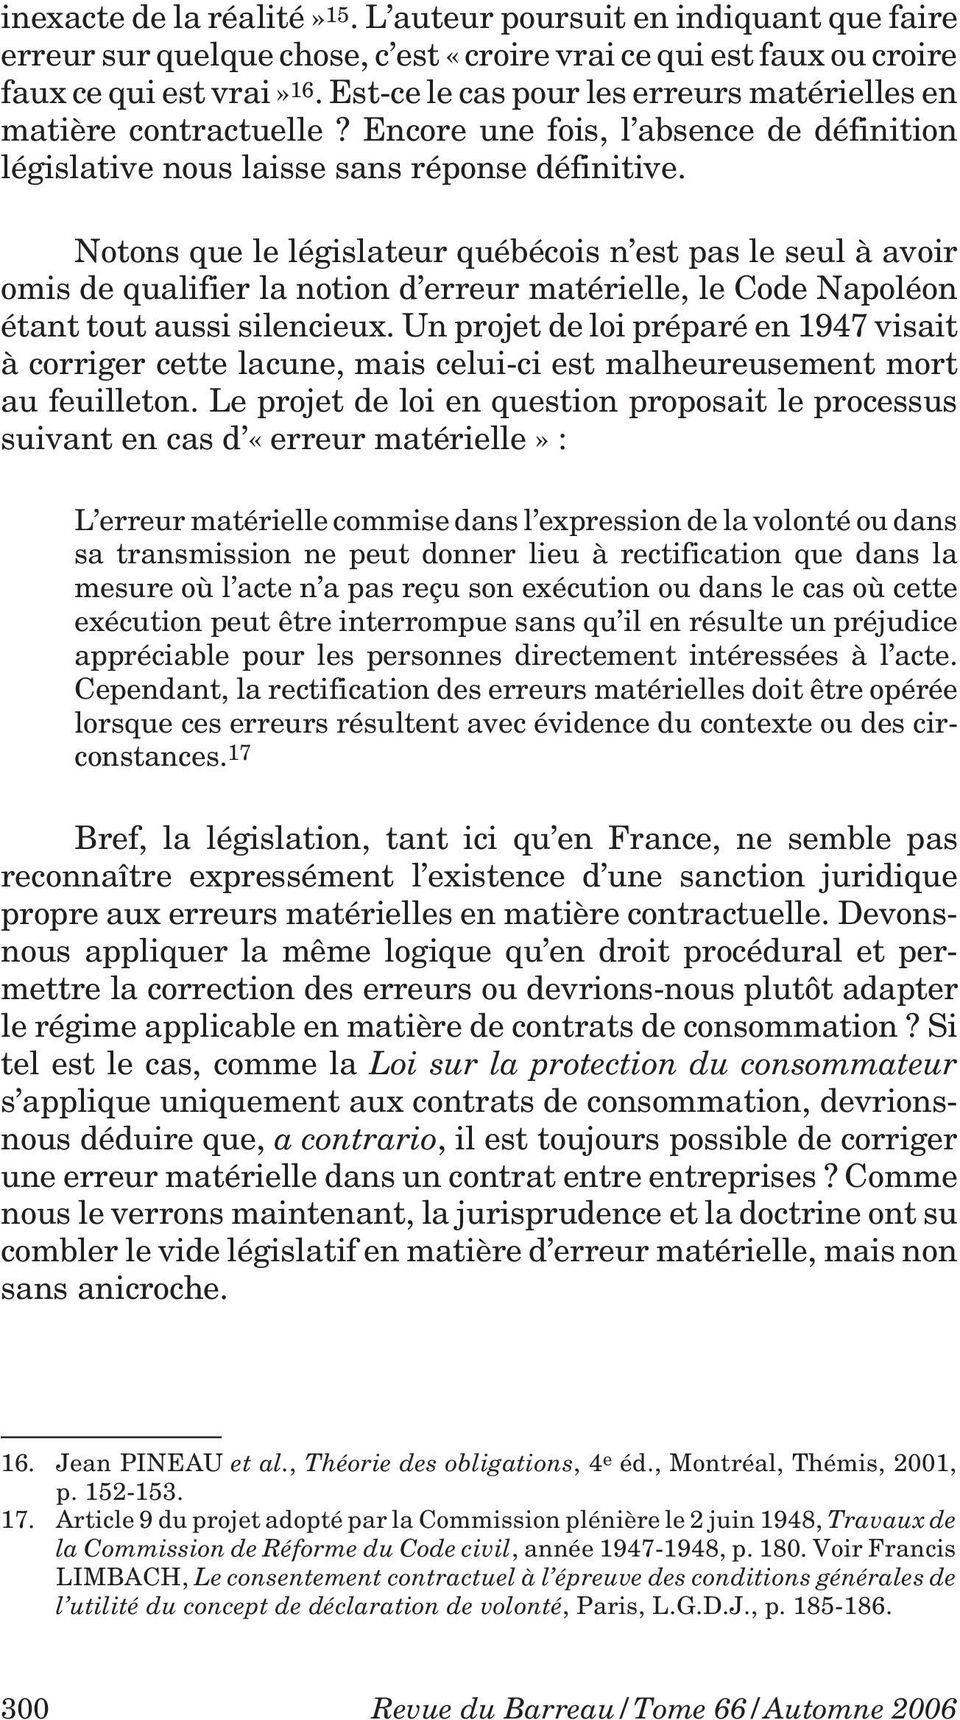 Notons que le législateur québécois n est pas le seul à avoir omis de qualifier la notion d erreur matérielle, le Code Napoléon étant tout aussi silencieux.